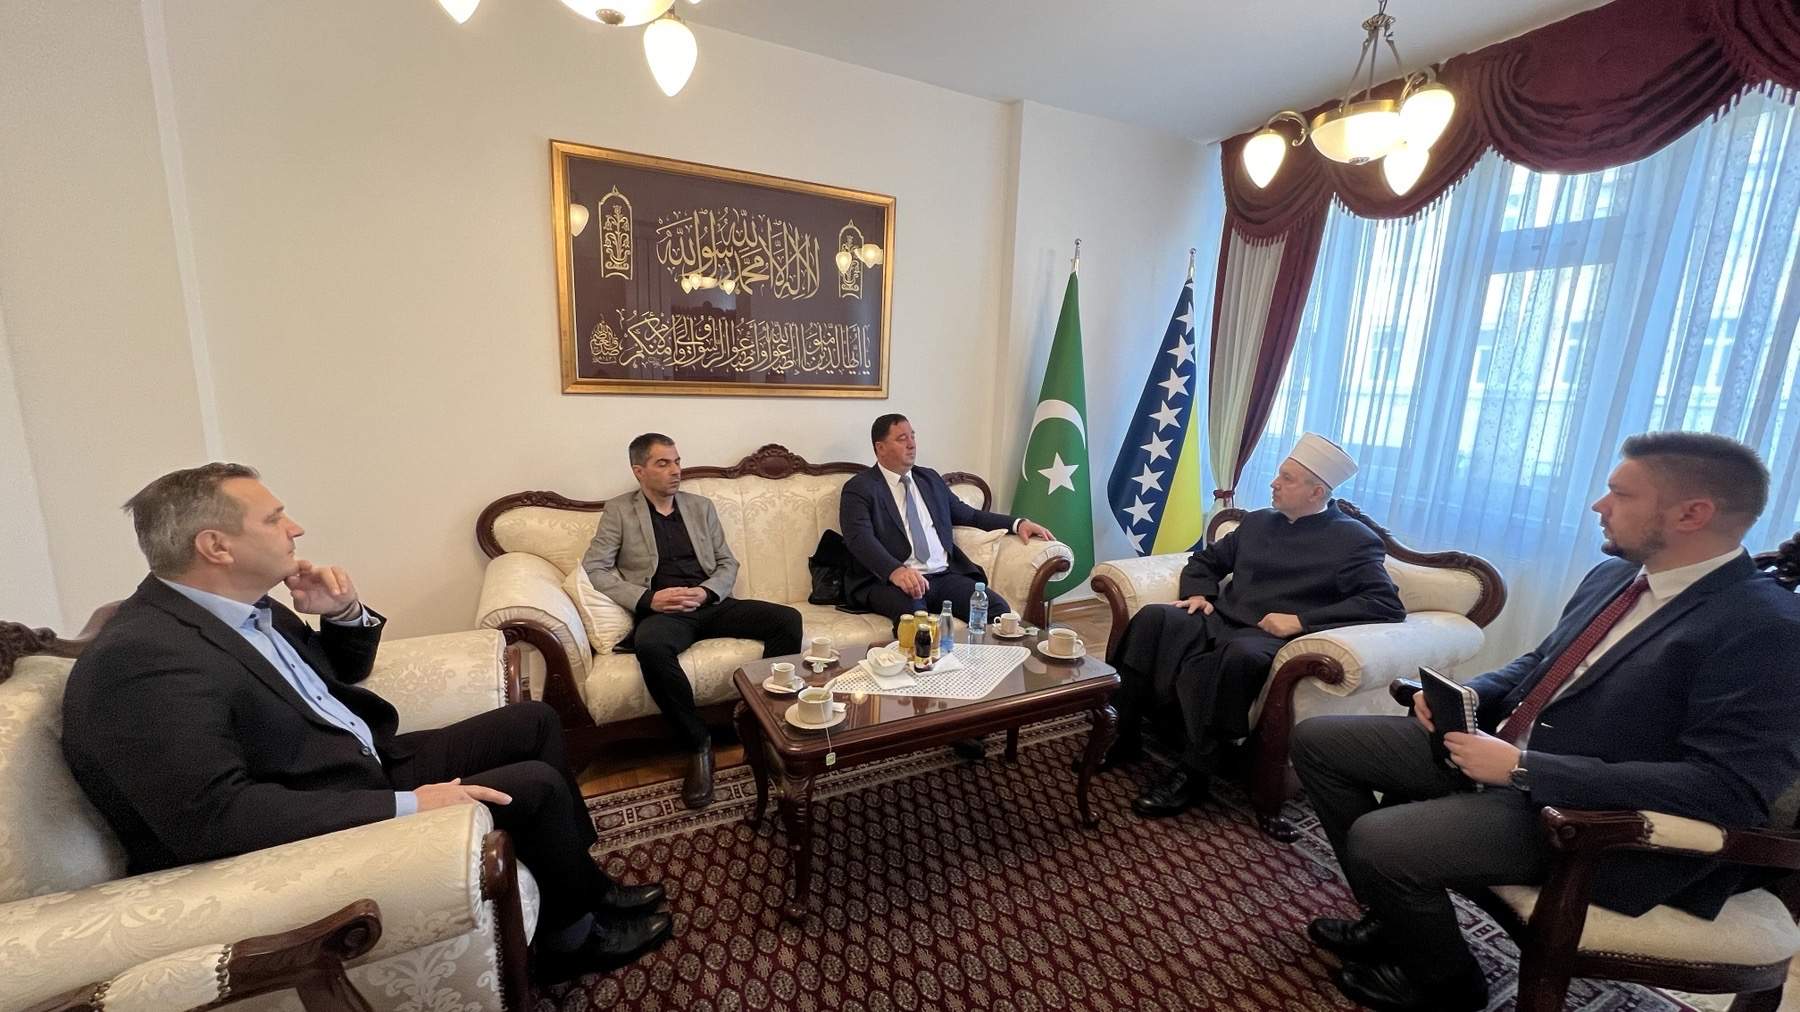 IMG_6043.jpeg - Delegacija Media centra posjetila Muftijstvo sarajevsko